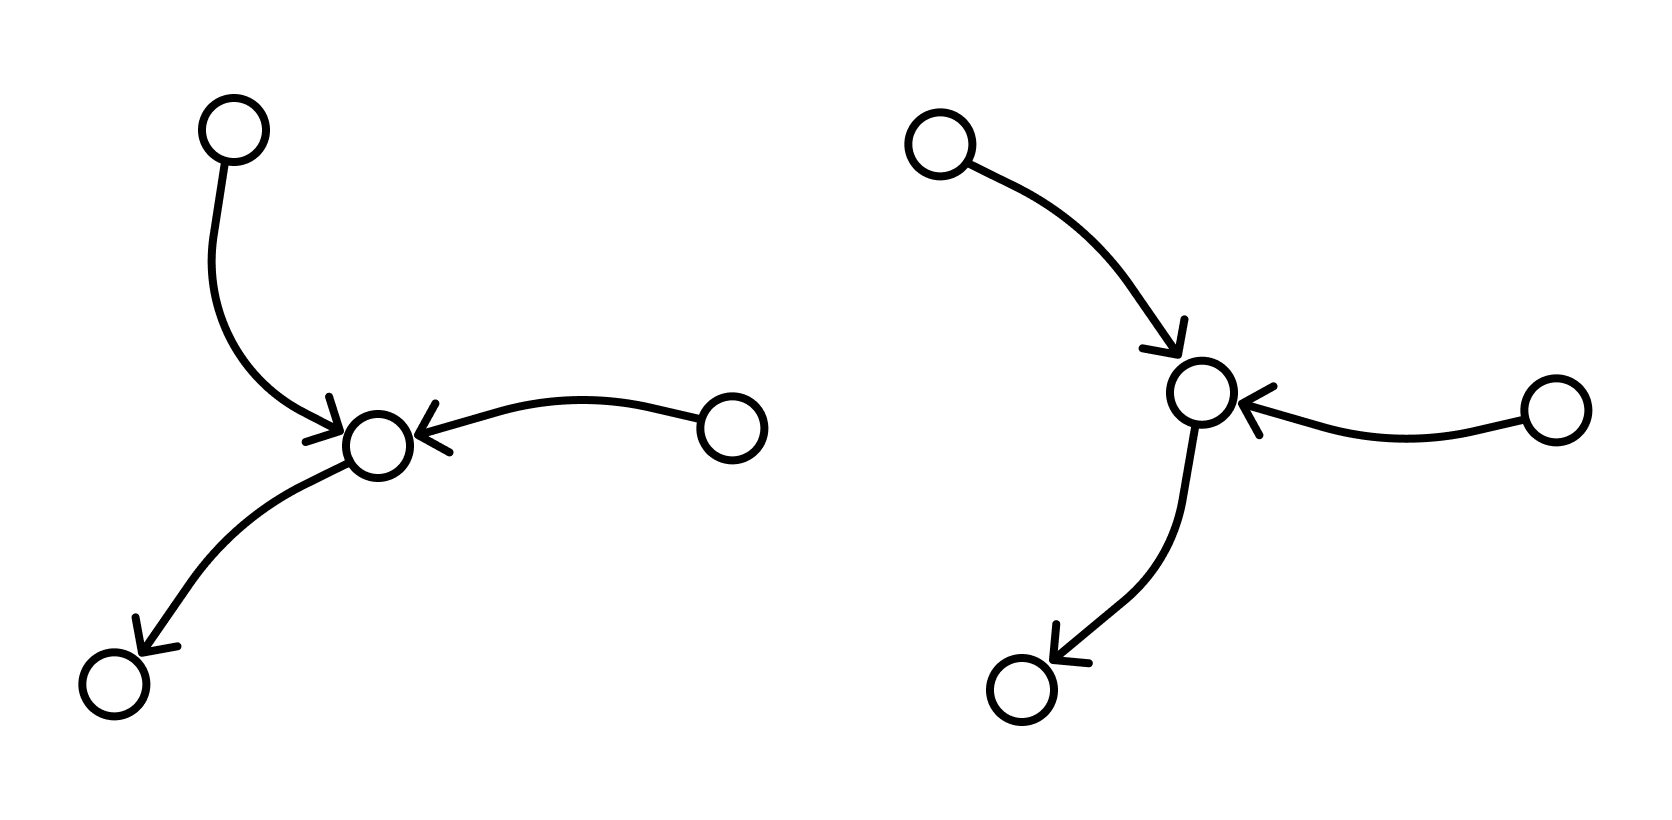 Цепь графы. Простая цепь графа. Элементарная цепь в графе. Цепь простая цепь графы. Цепь графа пример